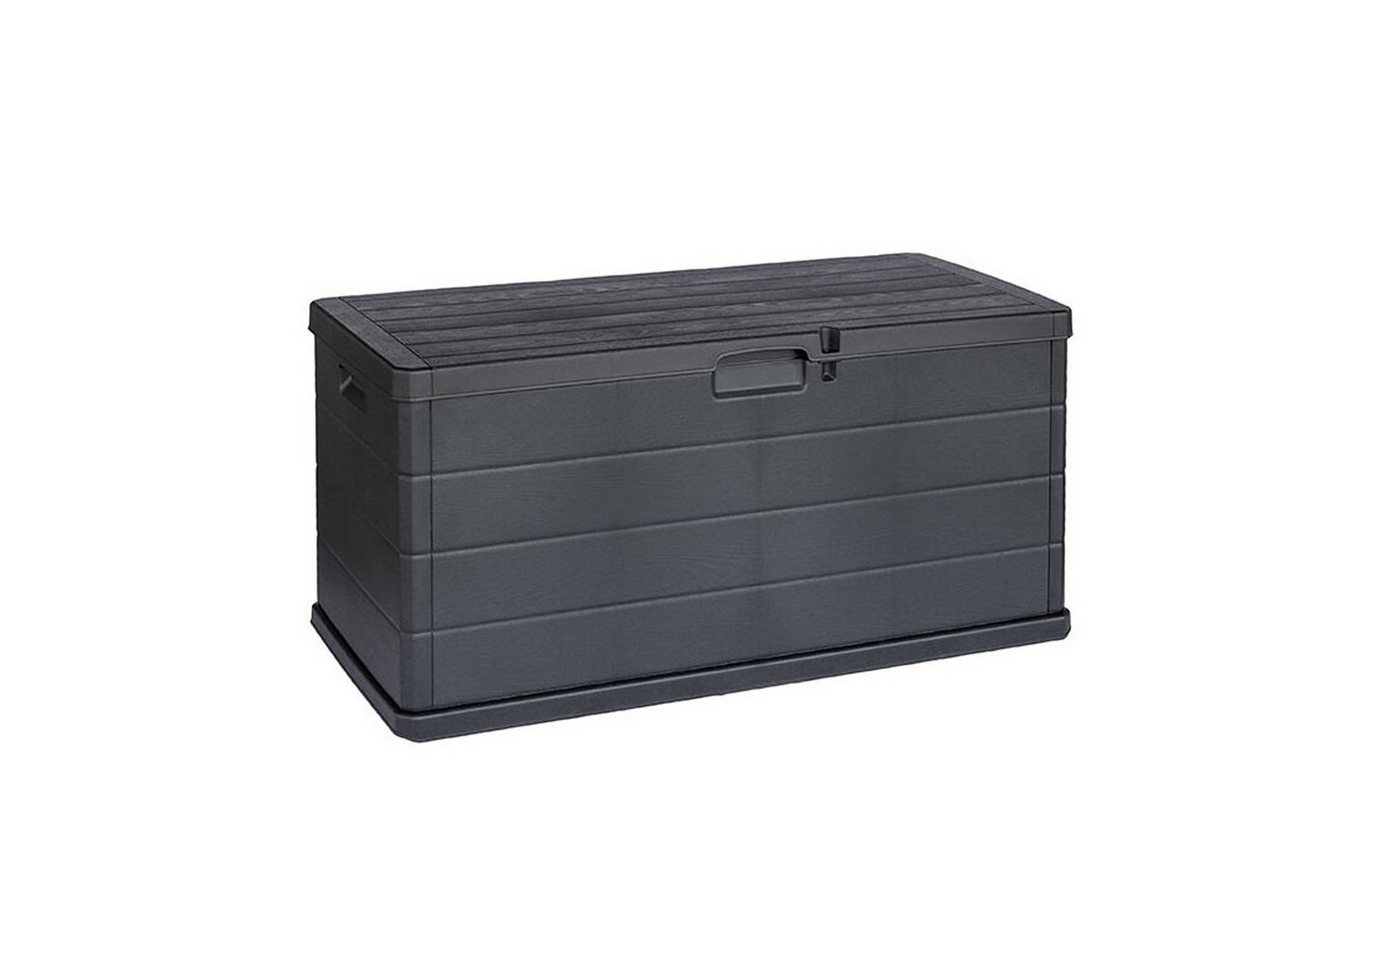 INDA-Exclusiv Auflagenbox XL Auflagenbox Sitzbank 2 Personen Kunststoff Anthrazit 340L von INDA-Exclusiv